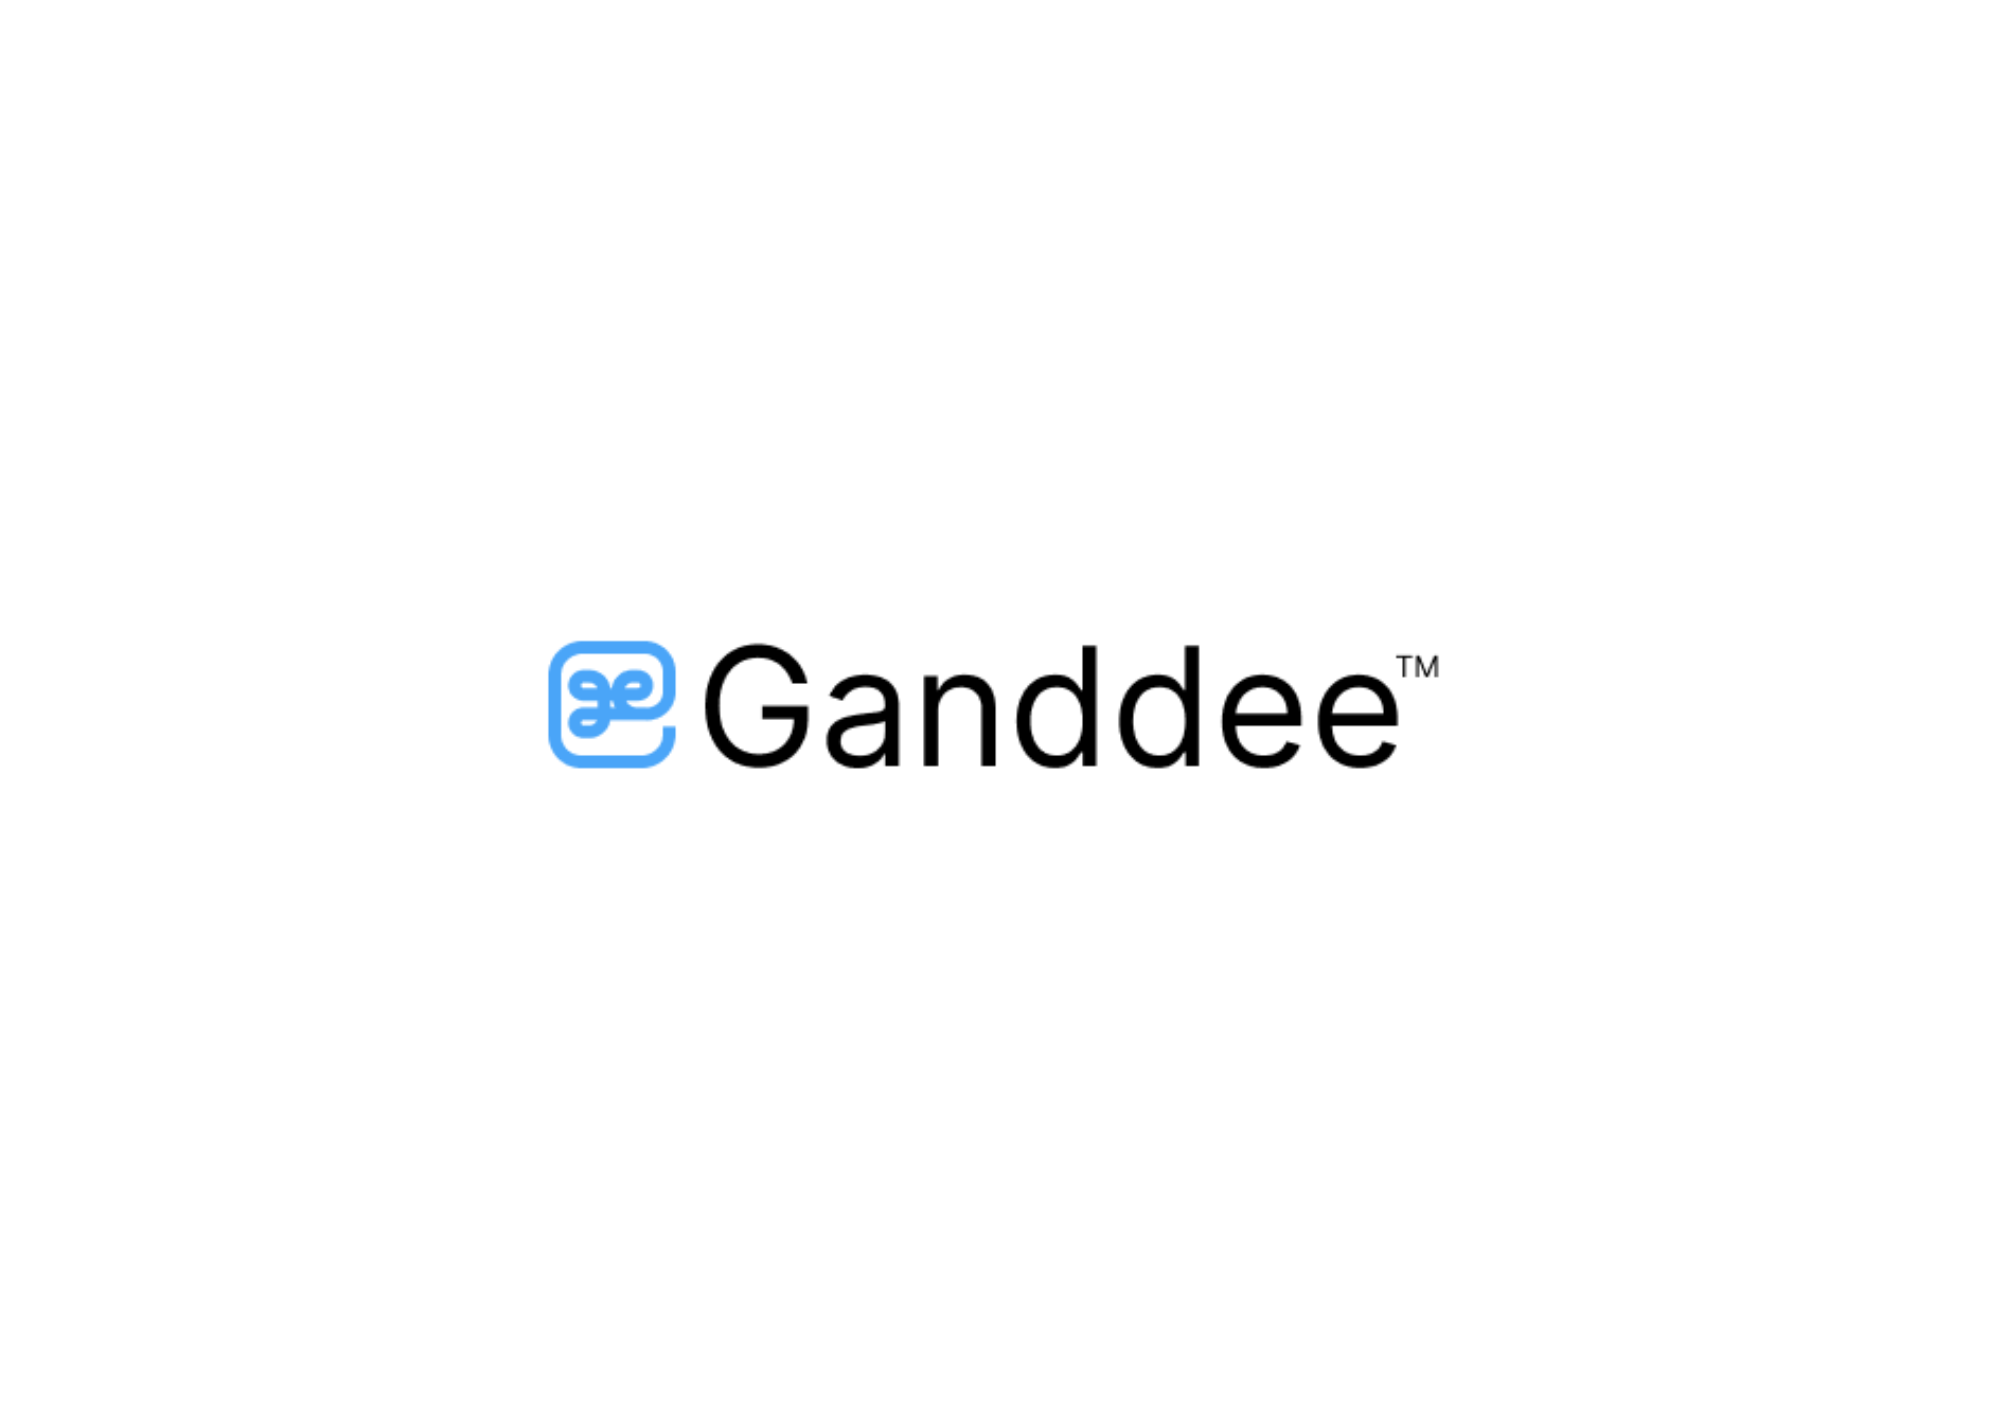 logo for Ganddee